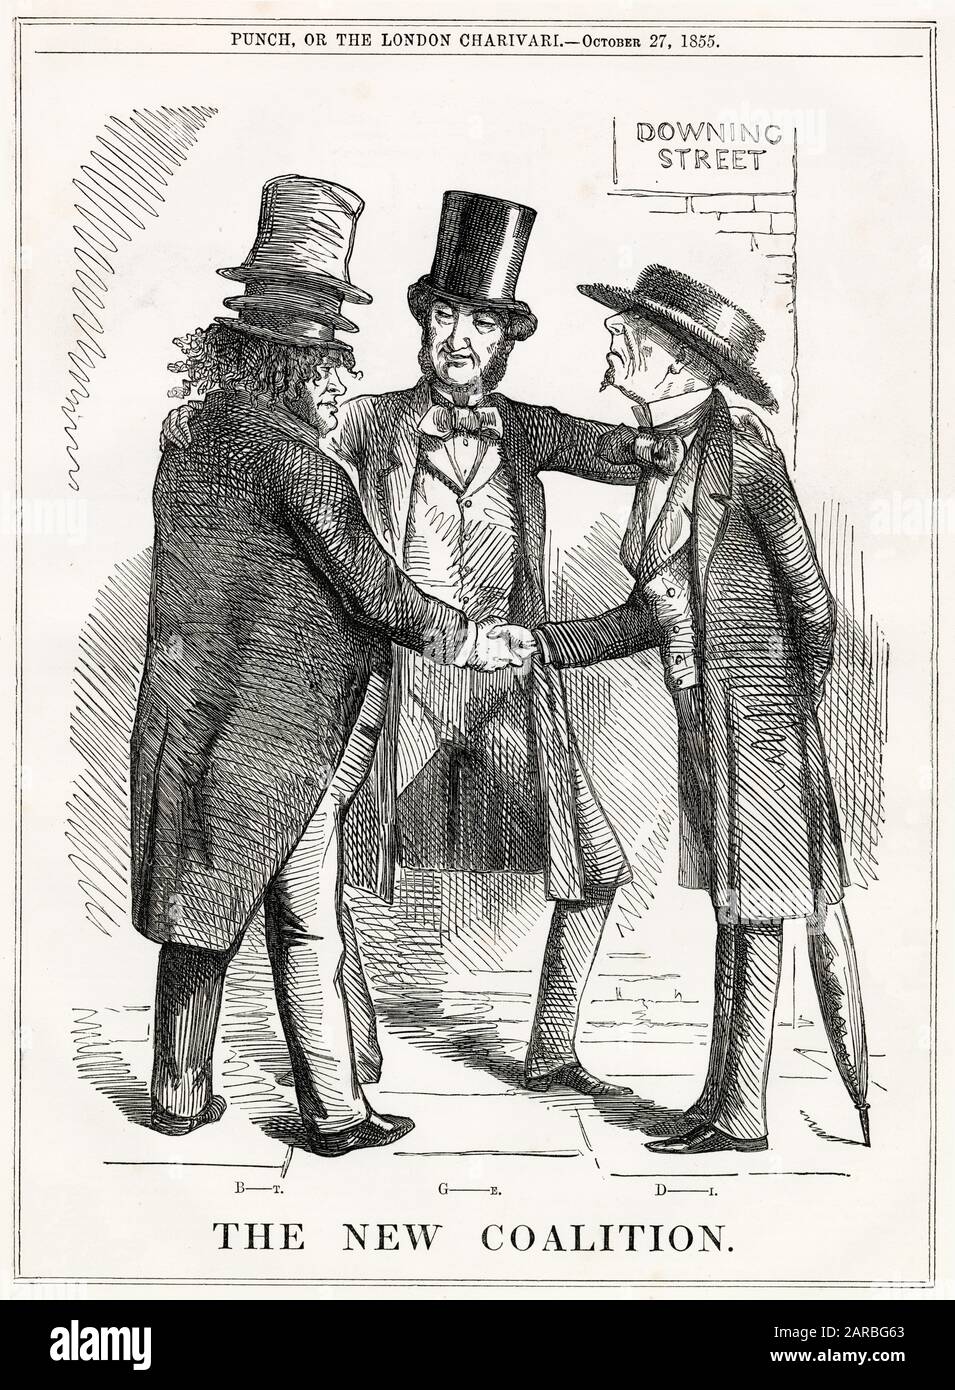 Cartoon, die Neue Koalition – ein satirischer Kommentar zur unwahrscheinlichen Zusammenarbeit von John Bright, William Gladstone und Benjamin Disraeli, die sich (aus ihren eigenen Gründen) gegen Palmerstons Regierung vereinen. Stockfoto